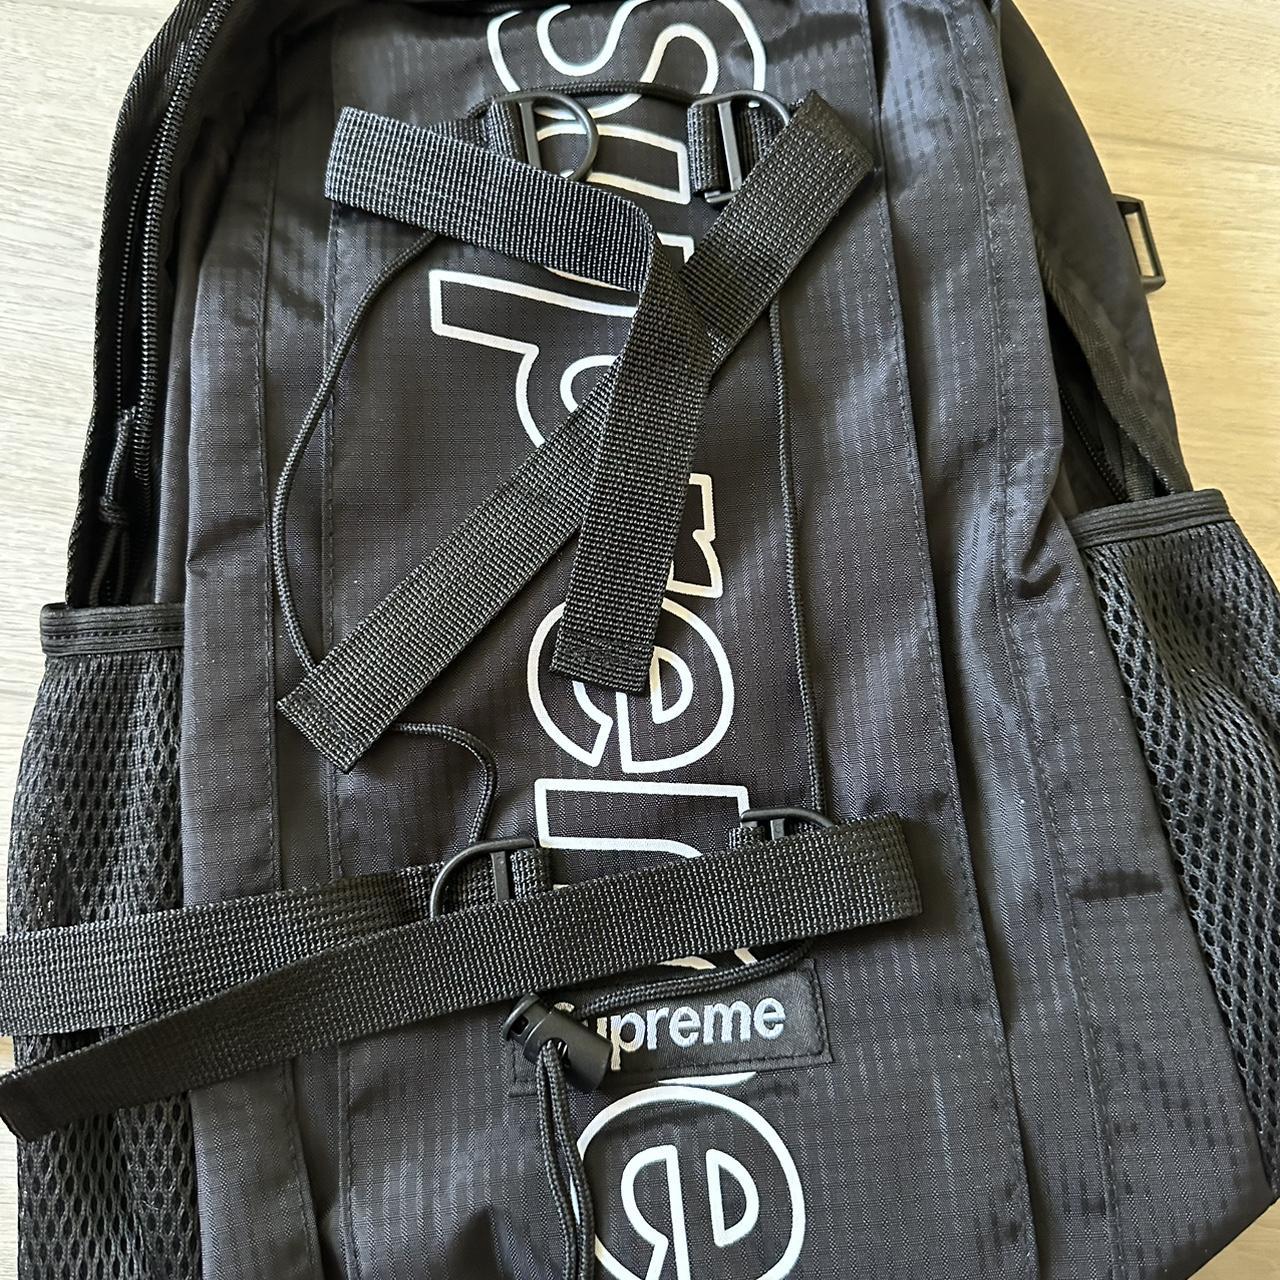 Supreme Backpack - Depop